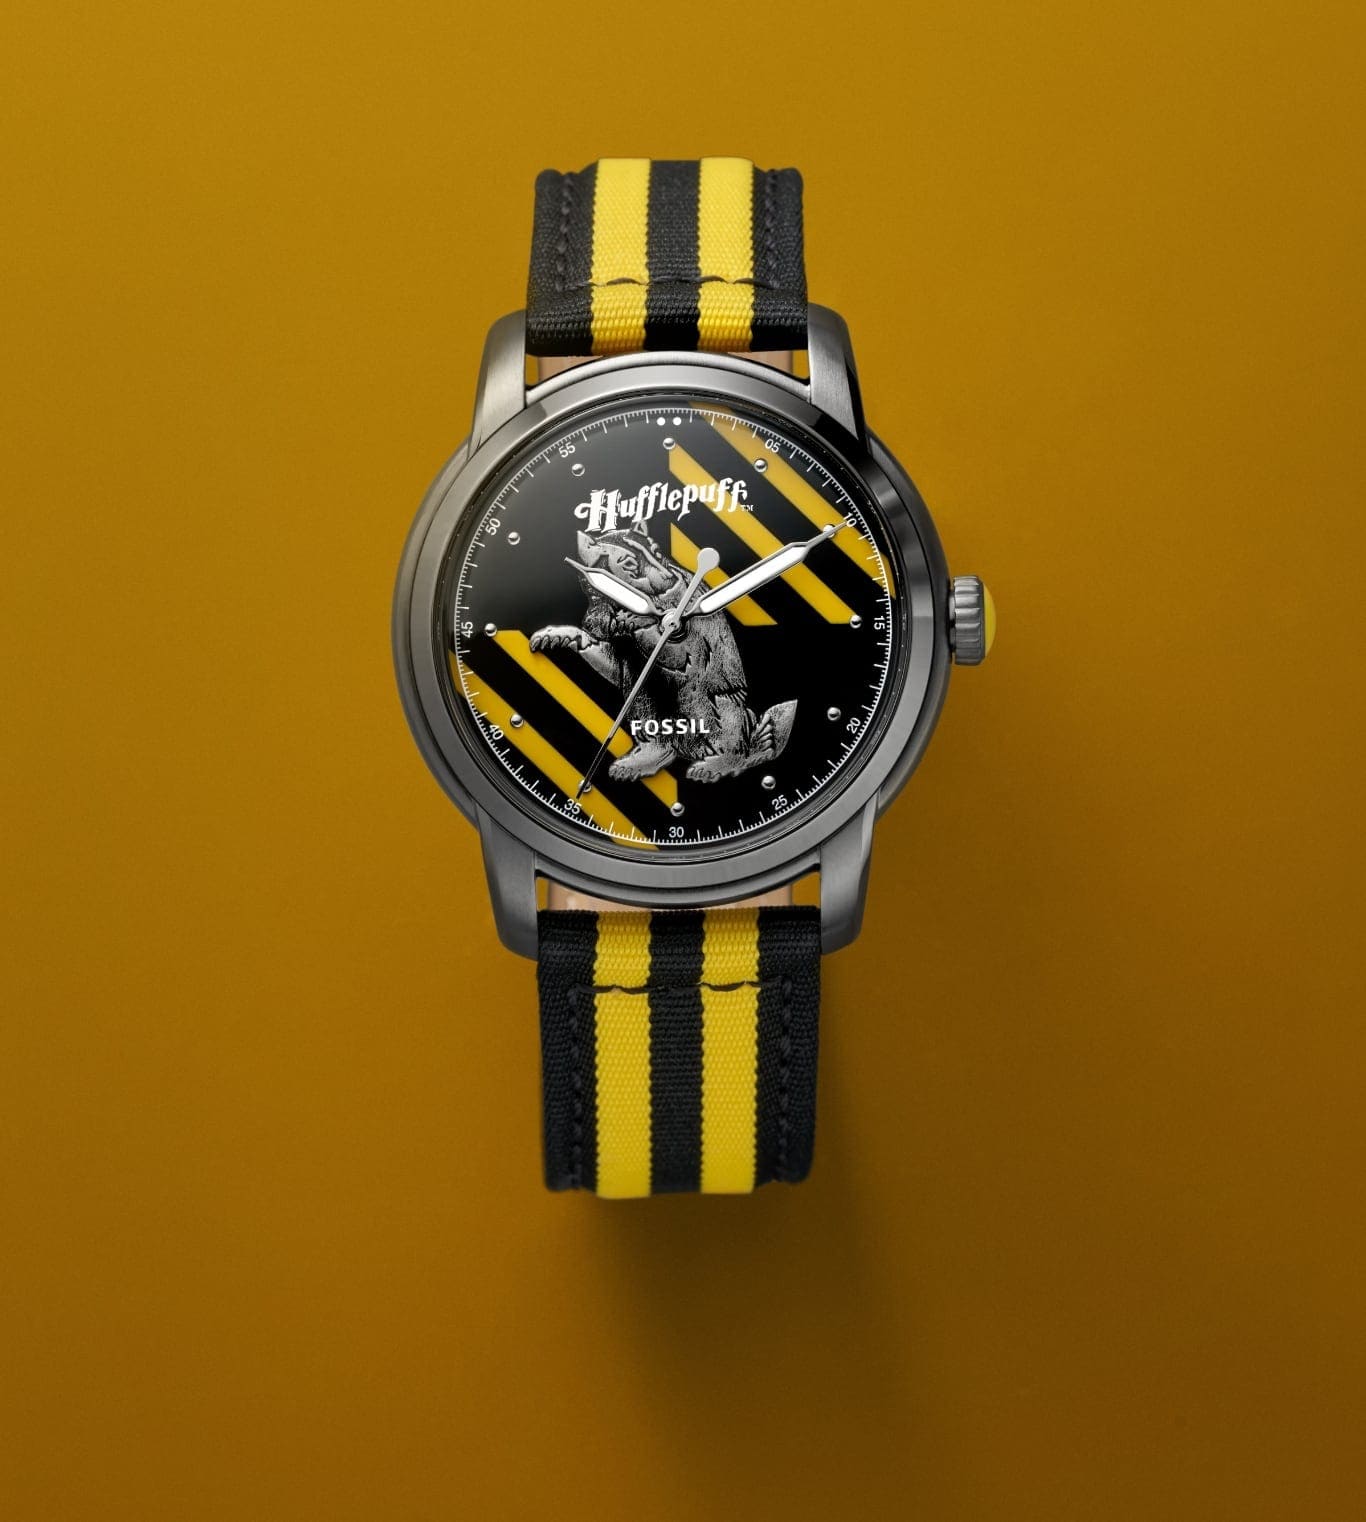 Silberfarbene Hufflepuff-Uhr mit schwarz-gelbem Band.